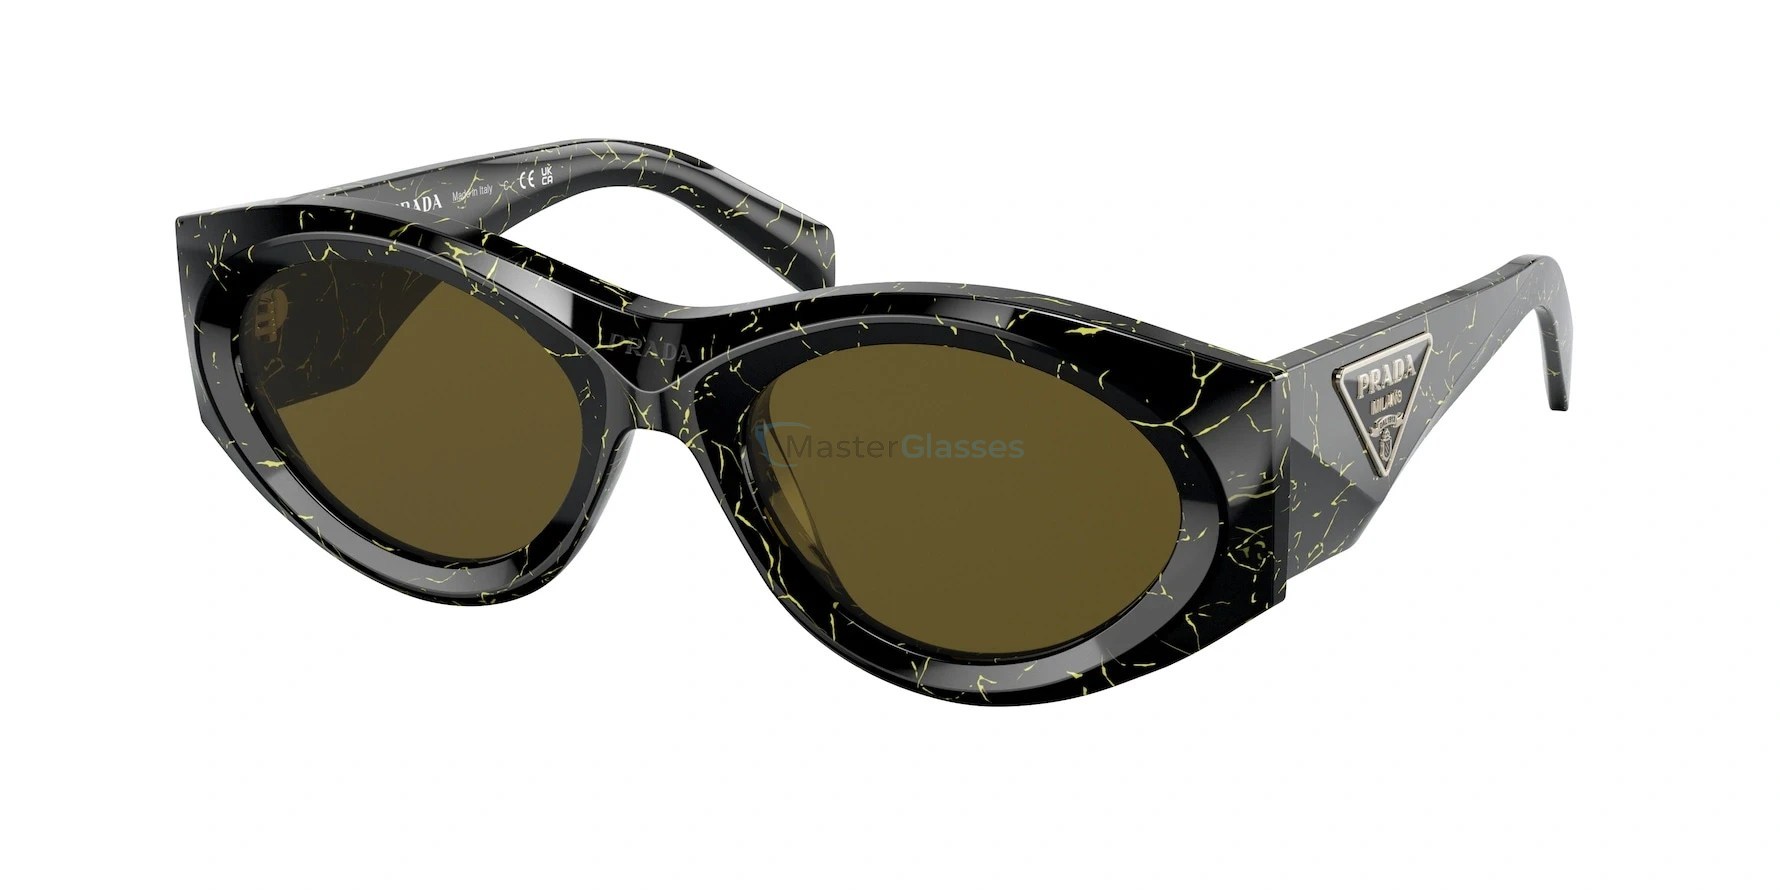 Zs 19 1. Солнцезащитные очки Prada PS 01ys 17g08f, черный. PR 20zs 19d01t 53. Солнцезащитные очки Prada PS 01ys 17g08f фото.